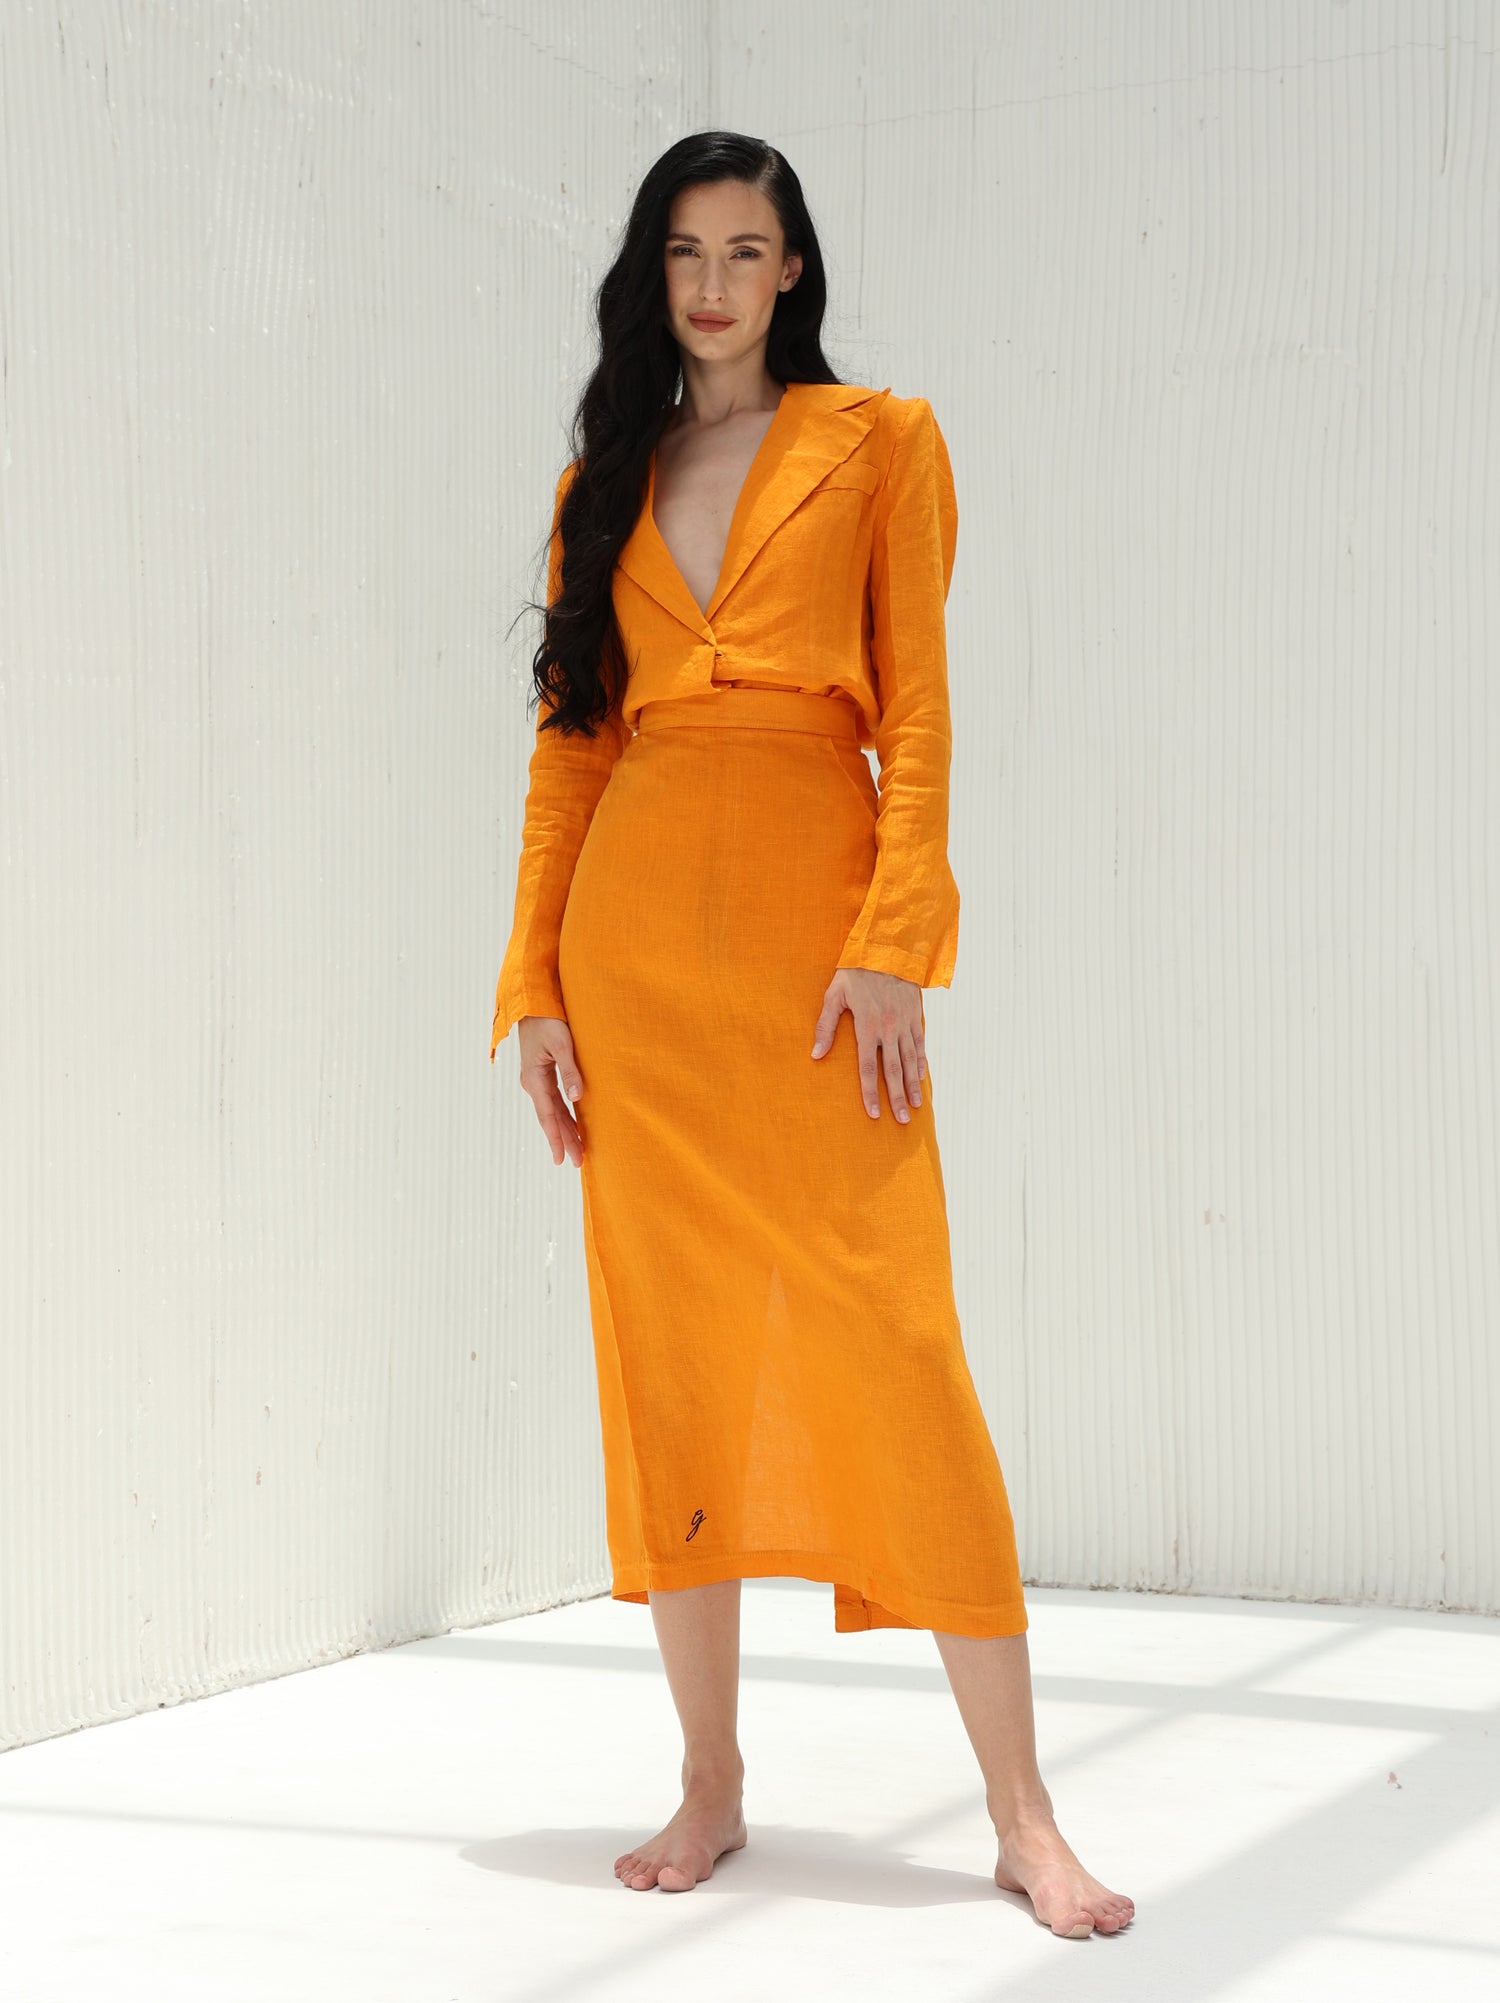 Eva 100% Linen Shirt by G Linen World - Carrot - Coord Shirt and Skirt